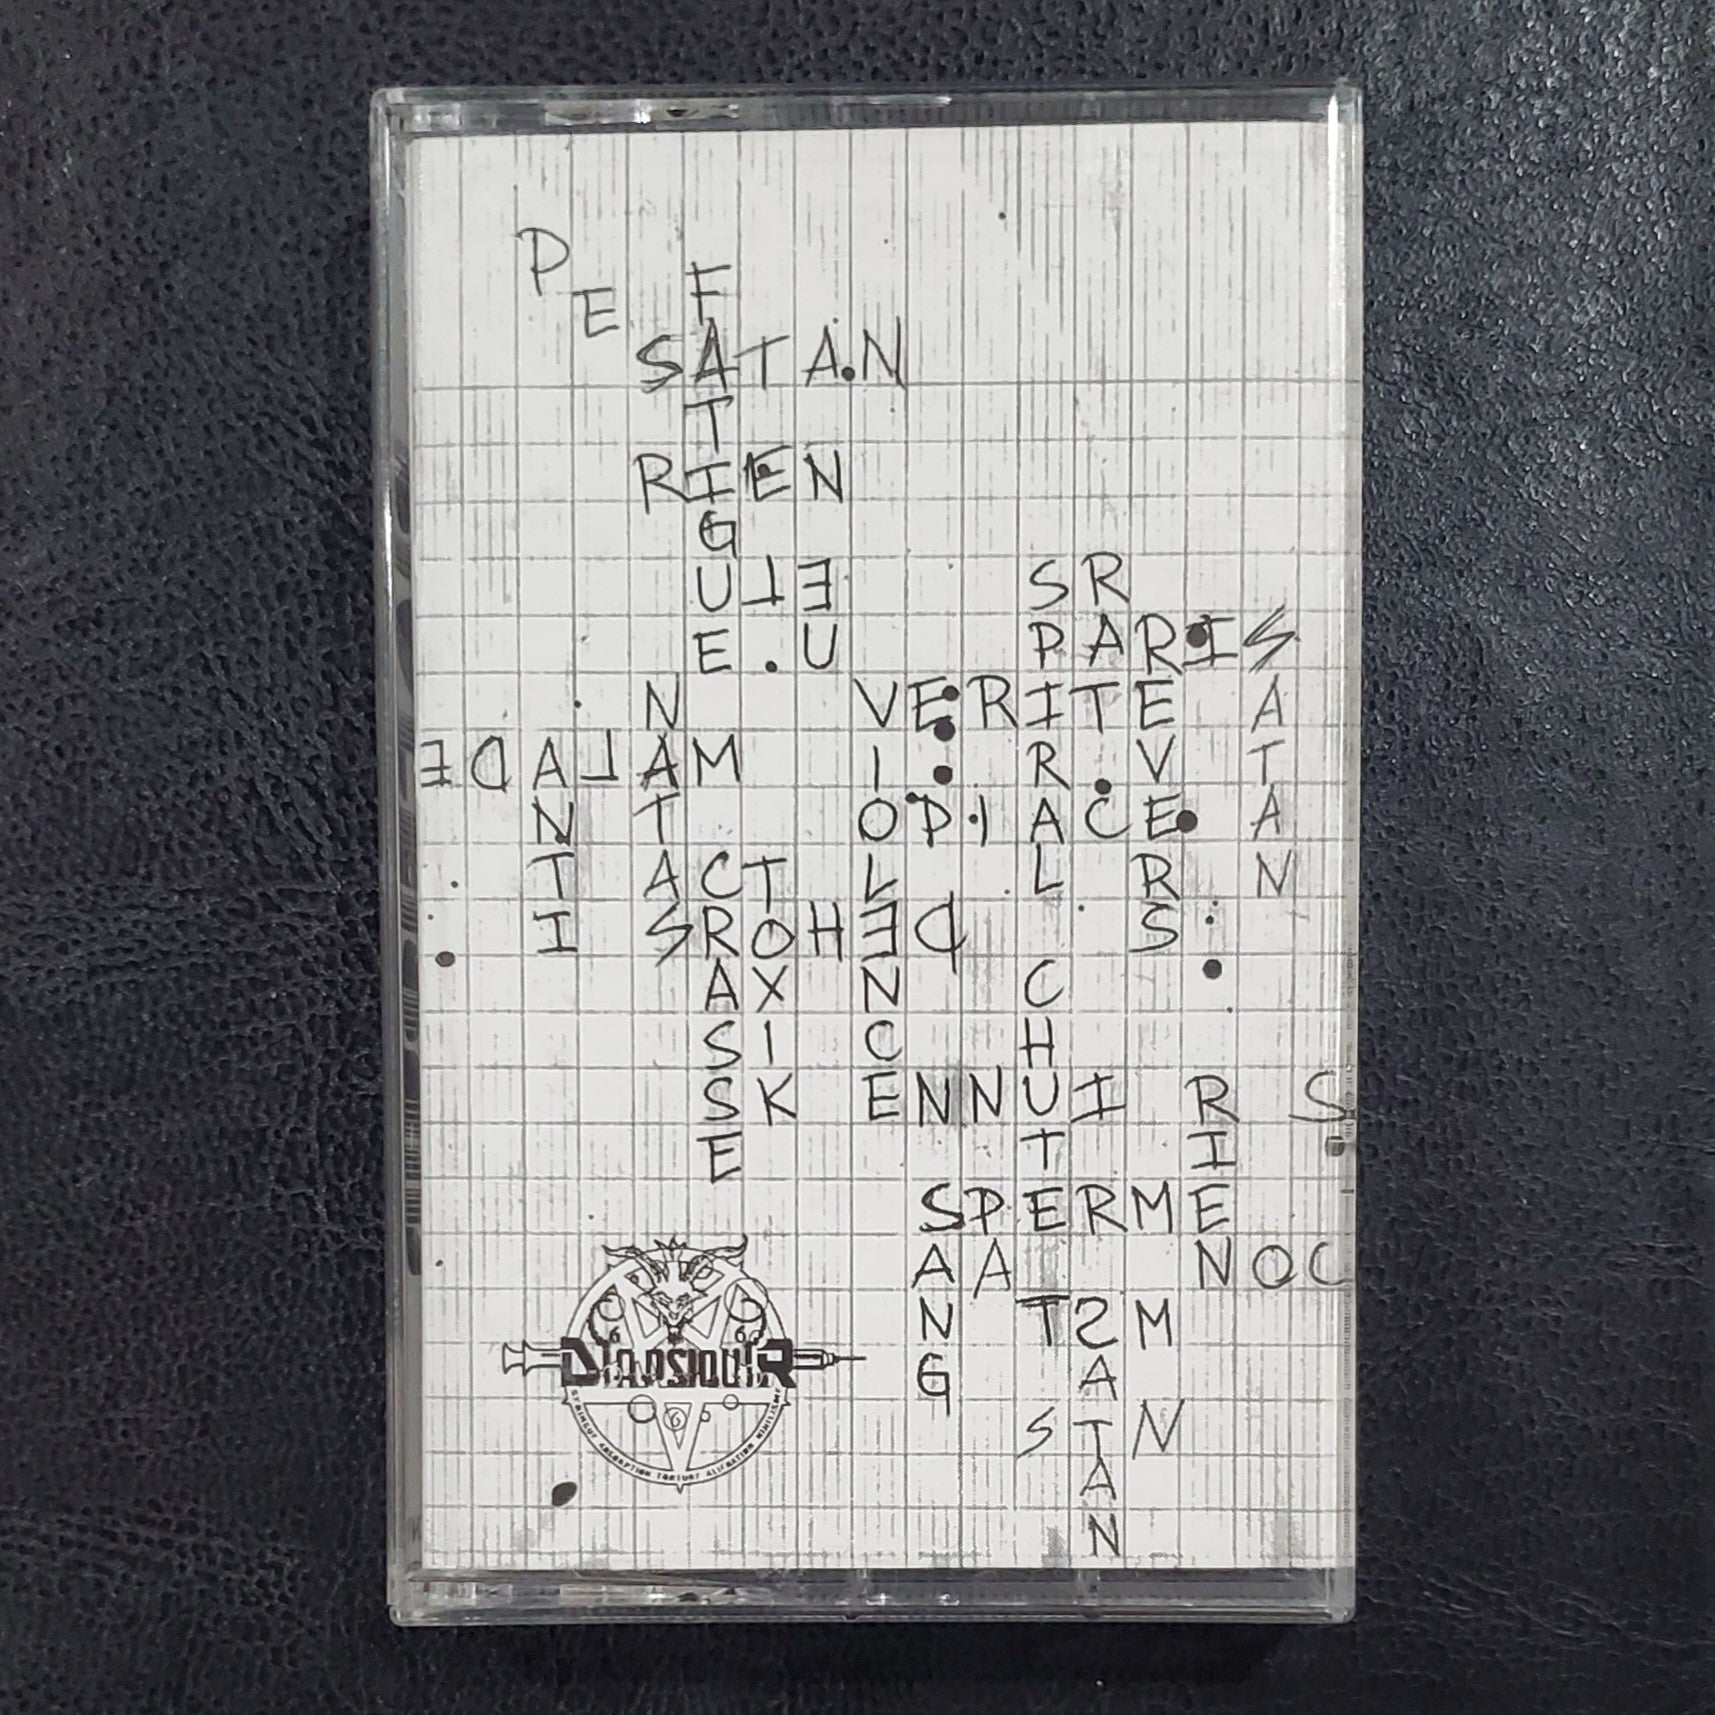 Diapsiquir – A.N.T.I. Cassette Tape